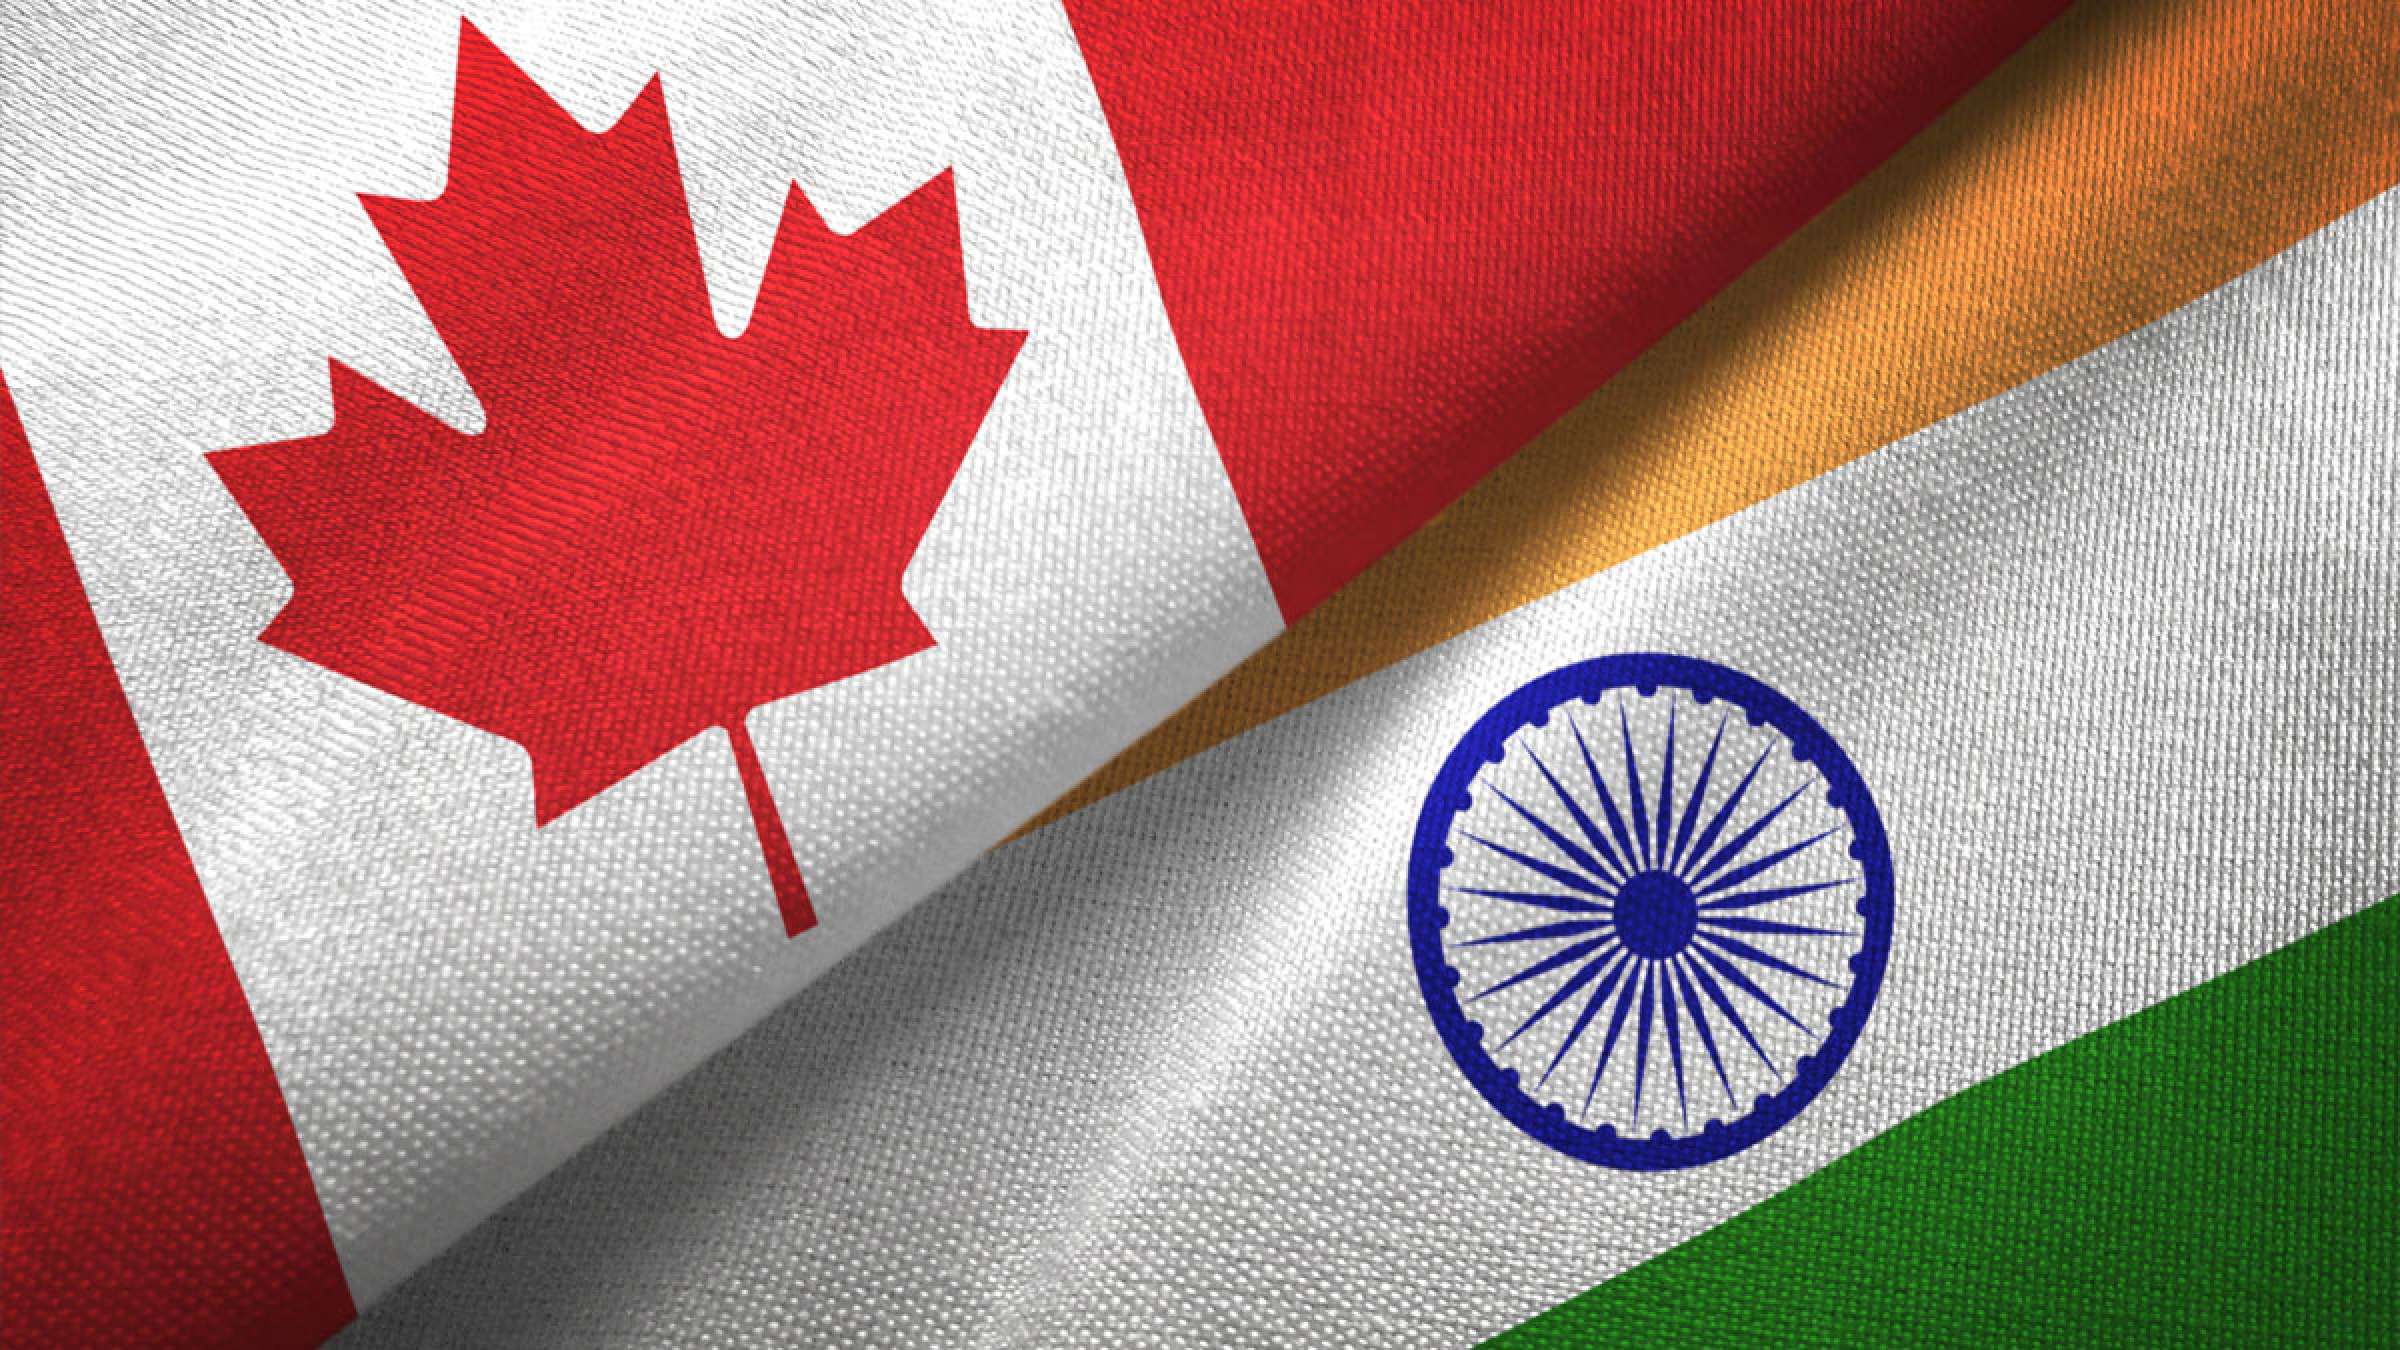 هند-خدمات-ویزا-در-کانادا-را-به-حالت-تعلیق-درآورد-احتمال-قطع-روابط-بالا-گرفت